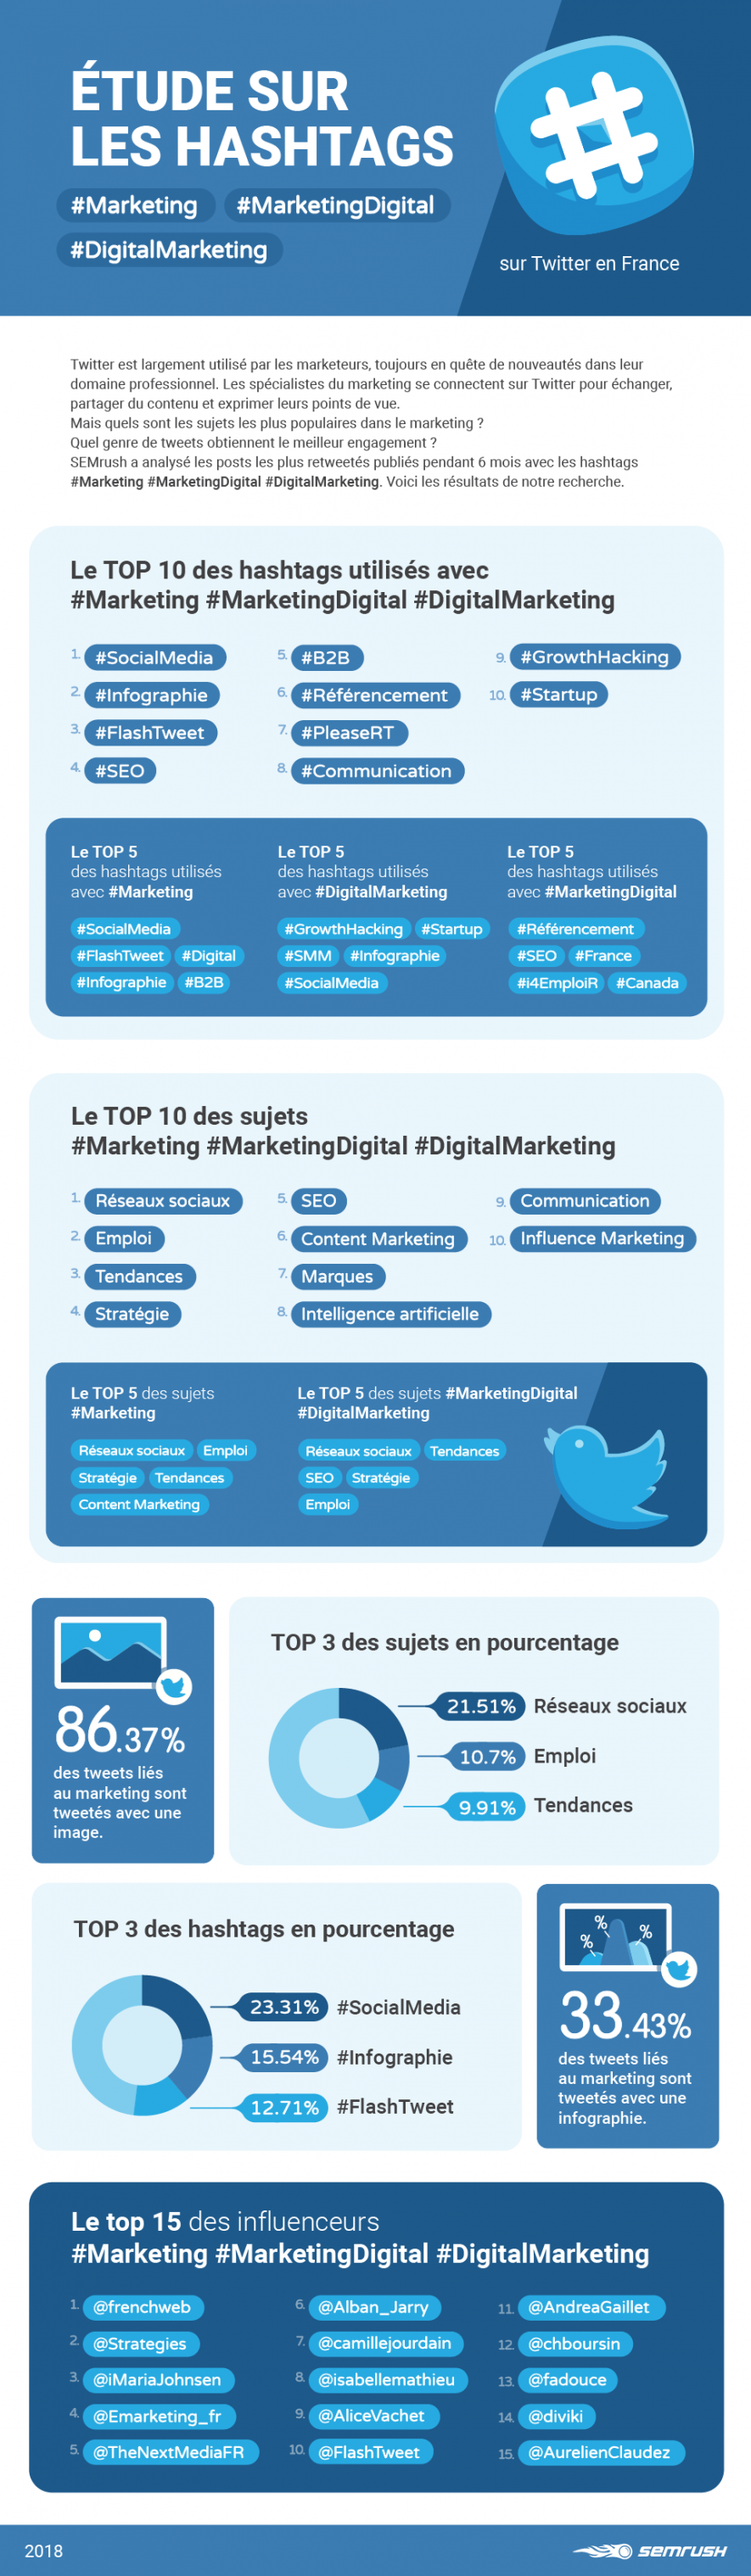 Infographie(s) : Tendances marketing sur Twitter France